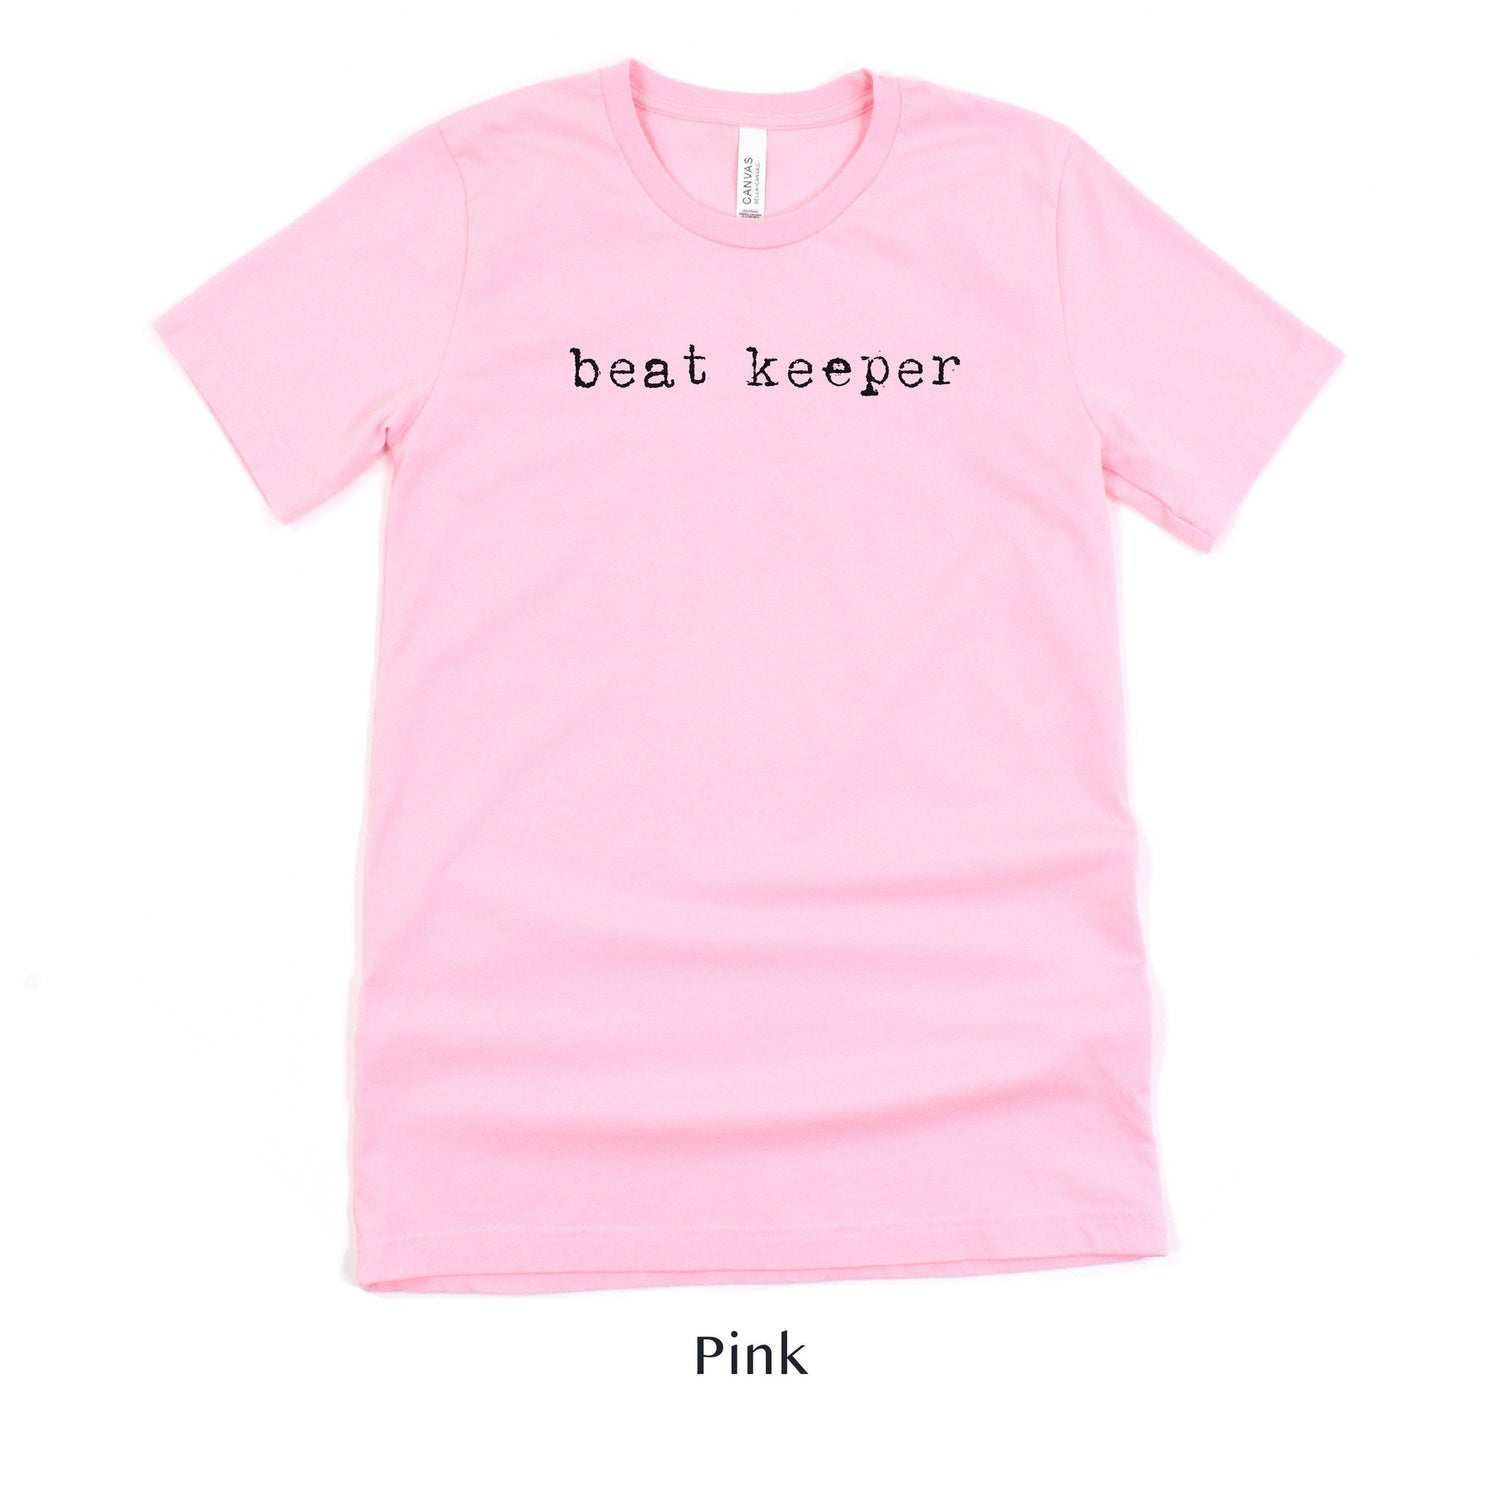 Beat Keeper - Wedding DJ Short-sleeve Tee by Oaklynn Lane - pink shirt